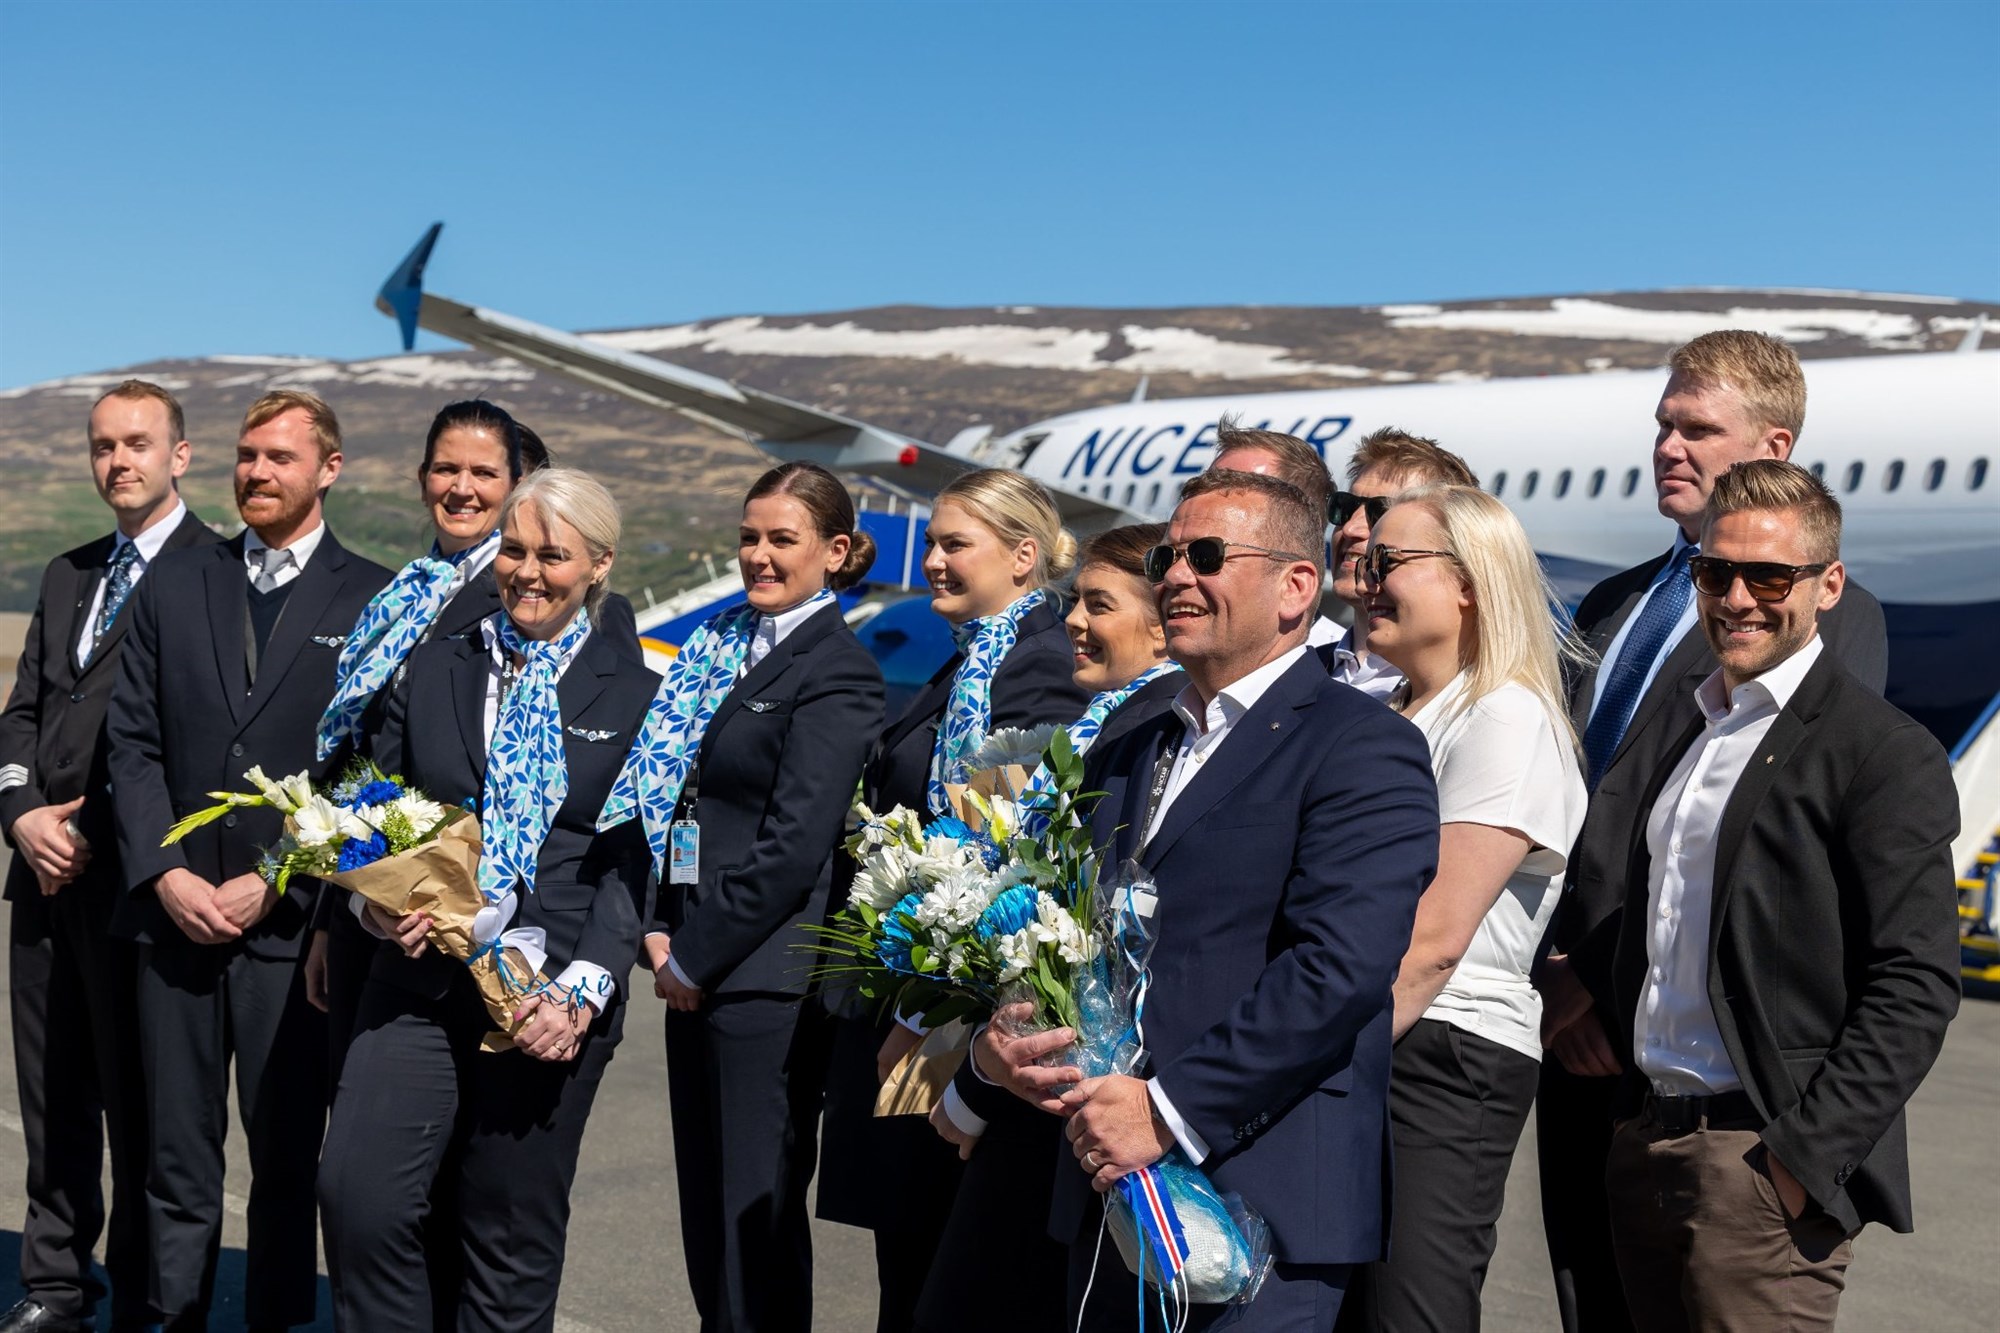 Airbus vél Niceair gefið nafnið Súlur á Akureyrarflugvelli